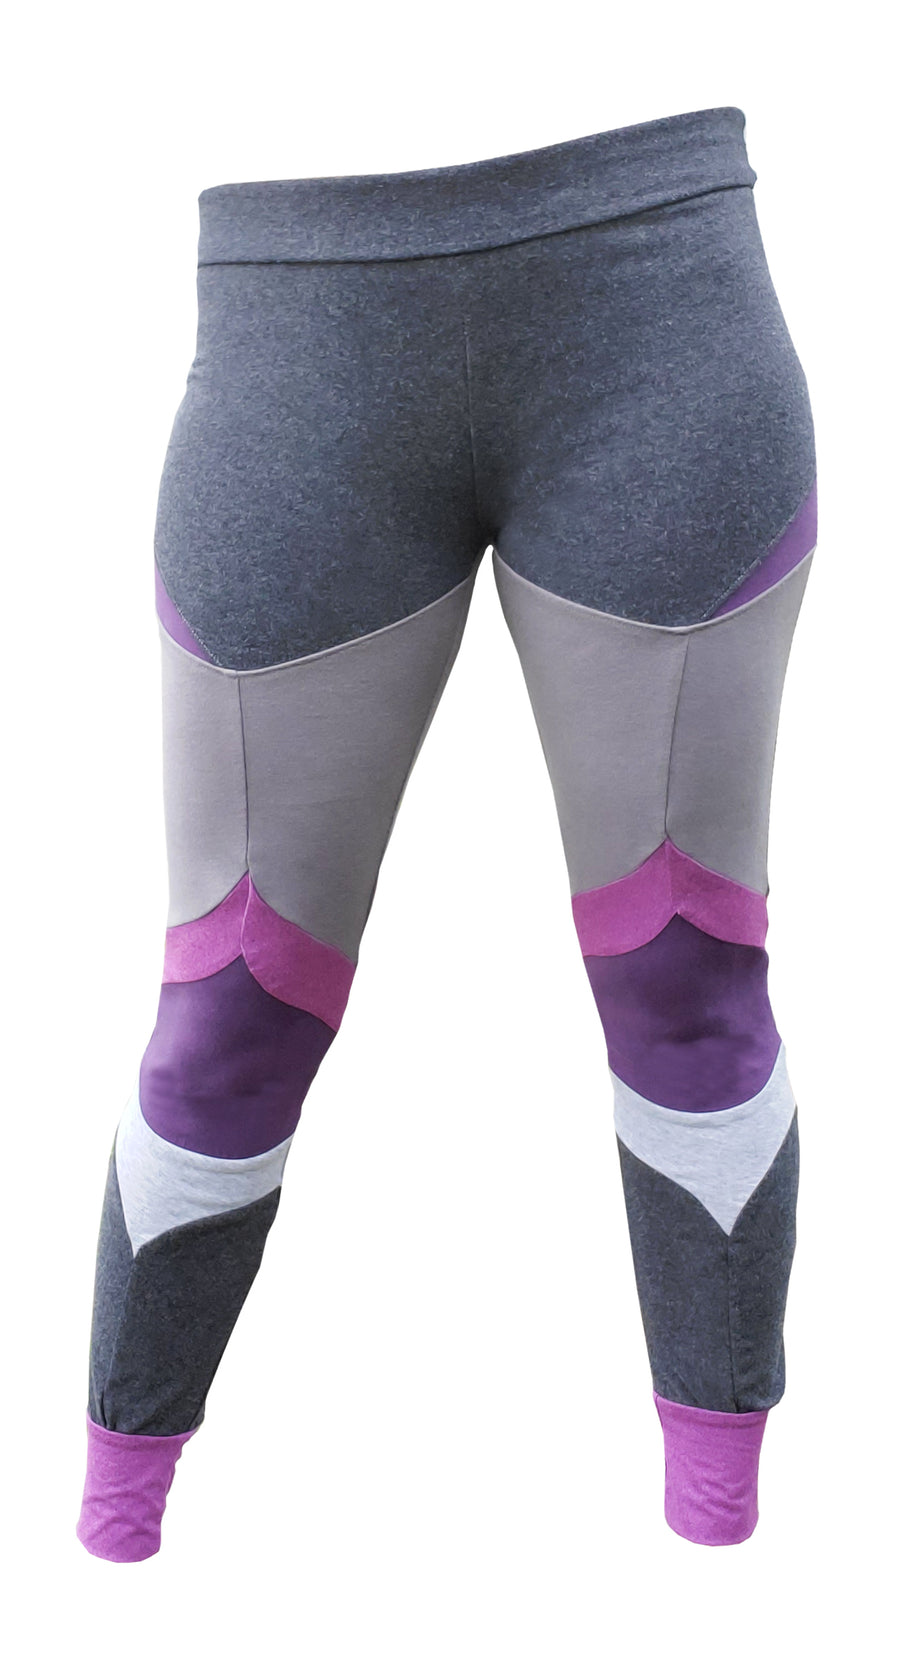 RBX Active Women's Plus Size Cotton Spandex Workout Yoga Capri/Ankle  Leggings | Fitness leggings women, Capri leggings workout, Black workout  leggings